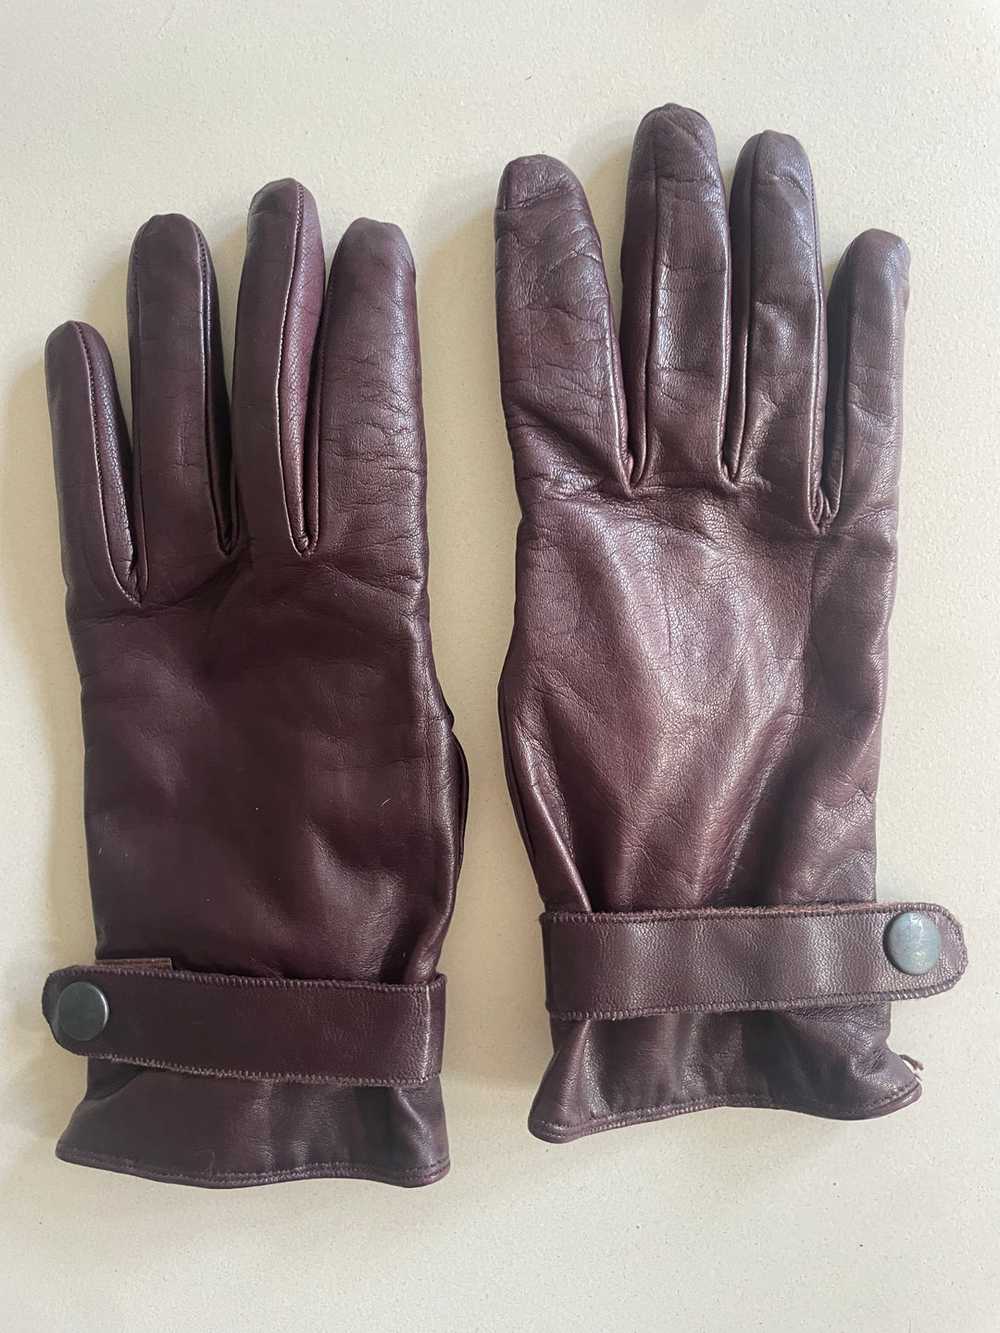 Vintage Dark Brown Kid Leather Gloves - image 1